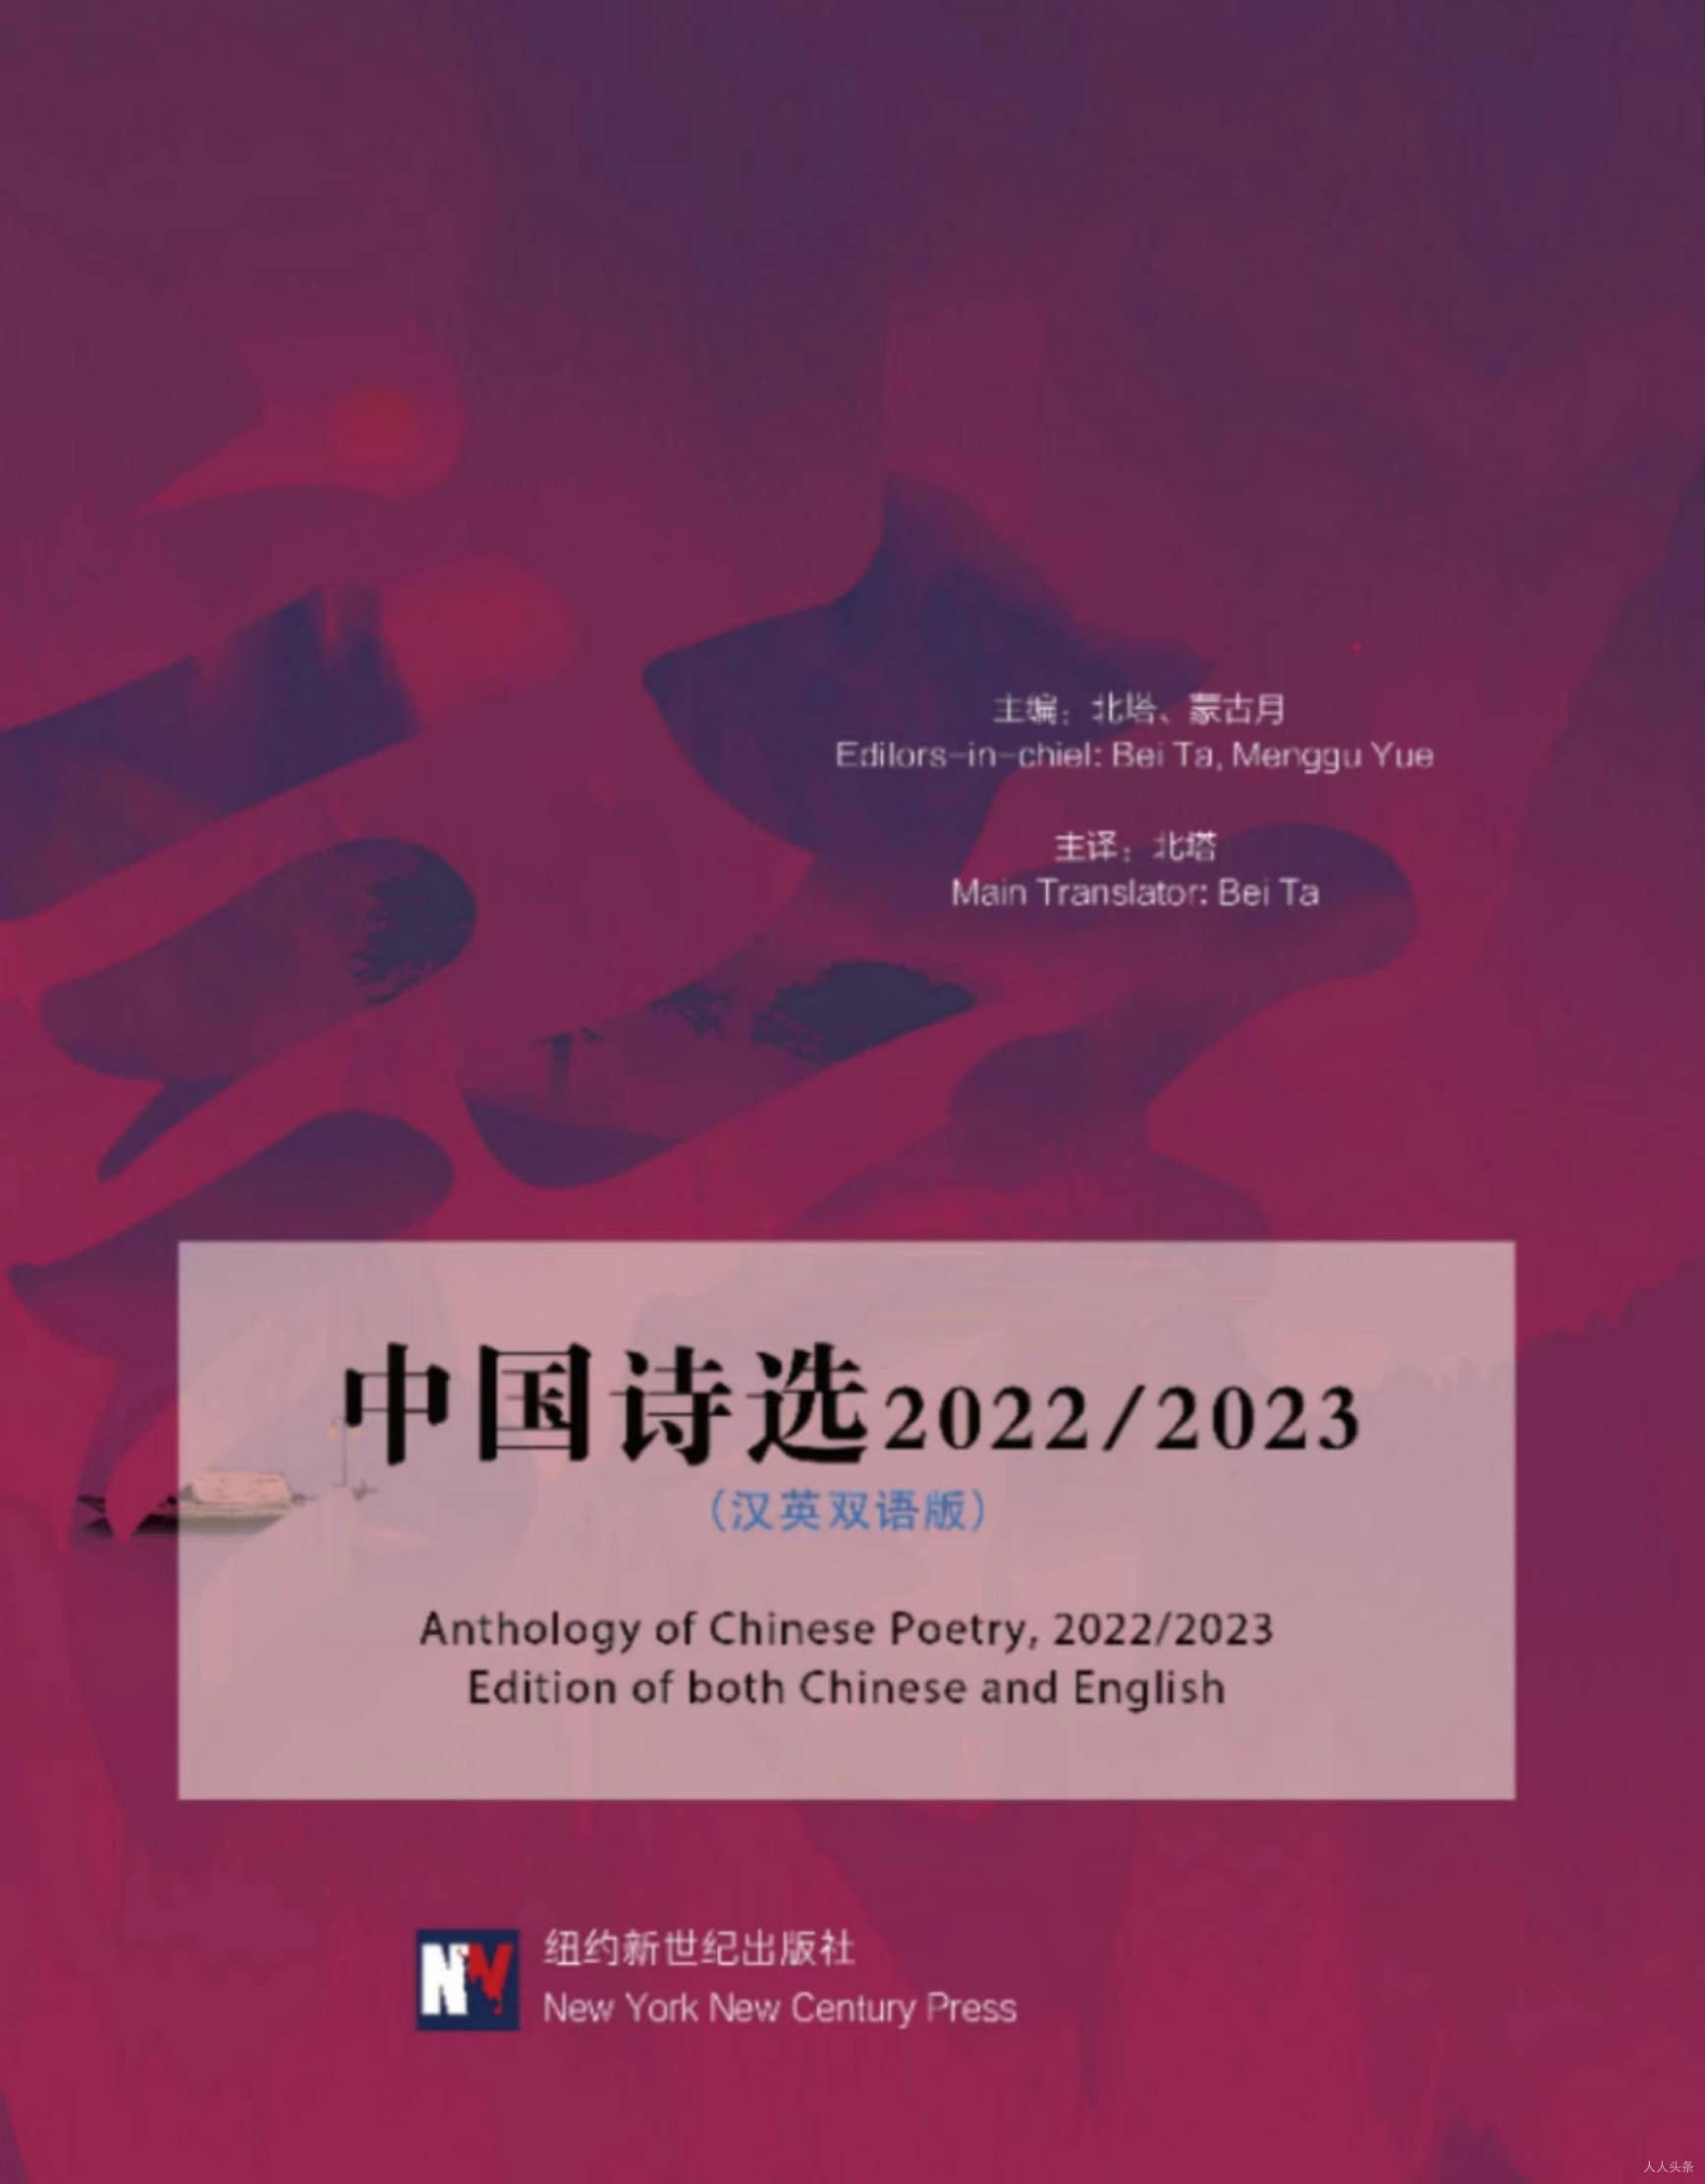 汉英双语版《中国诗选2022/2023》近日出版